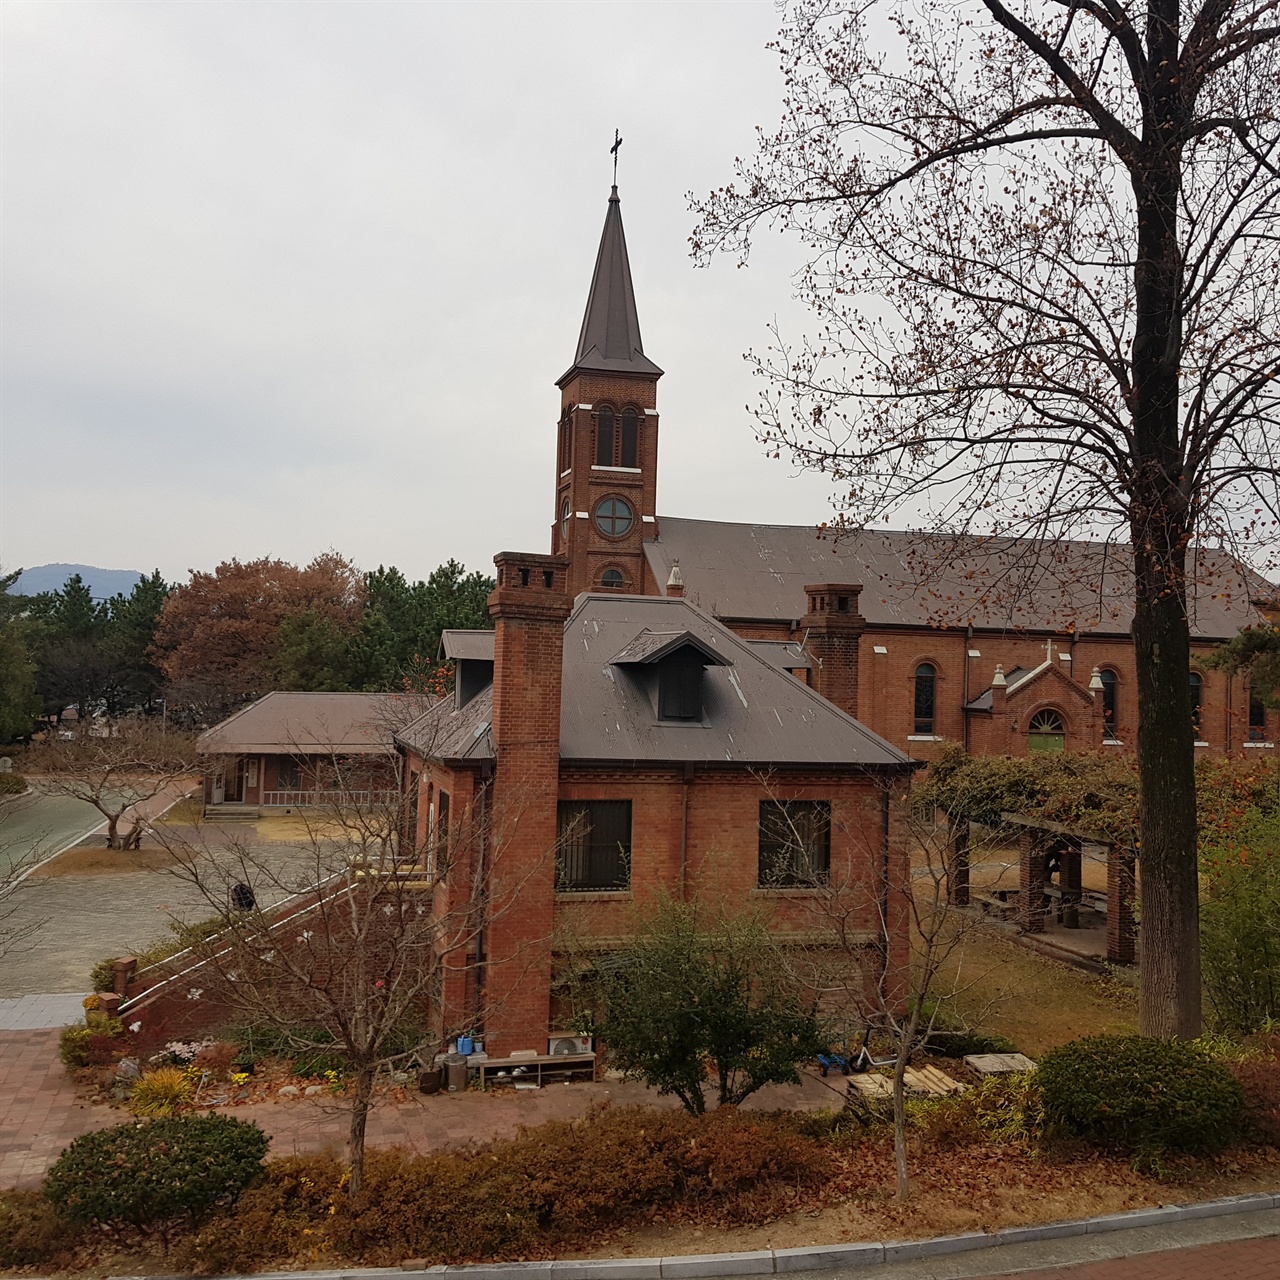  고풍스런 분위기 자아내는 경북 왜관 성베네딕토 수도원 전경